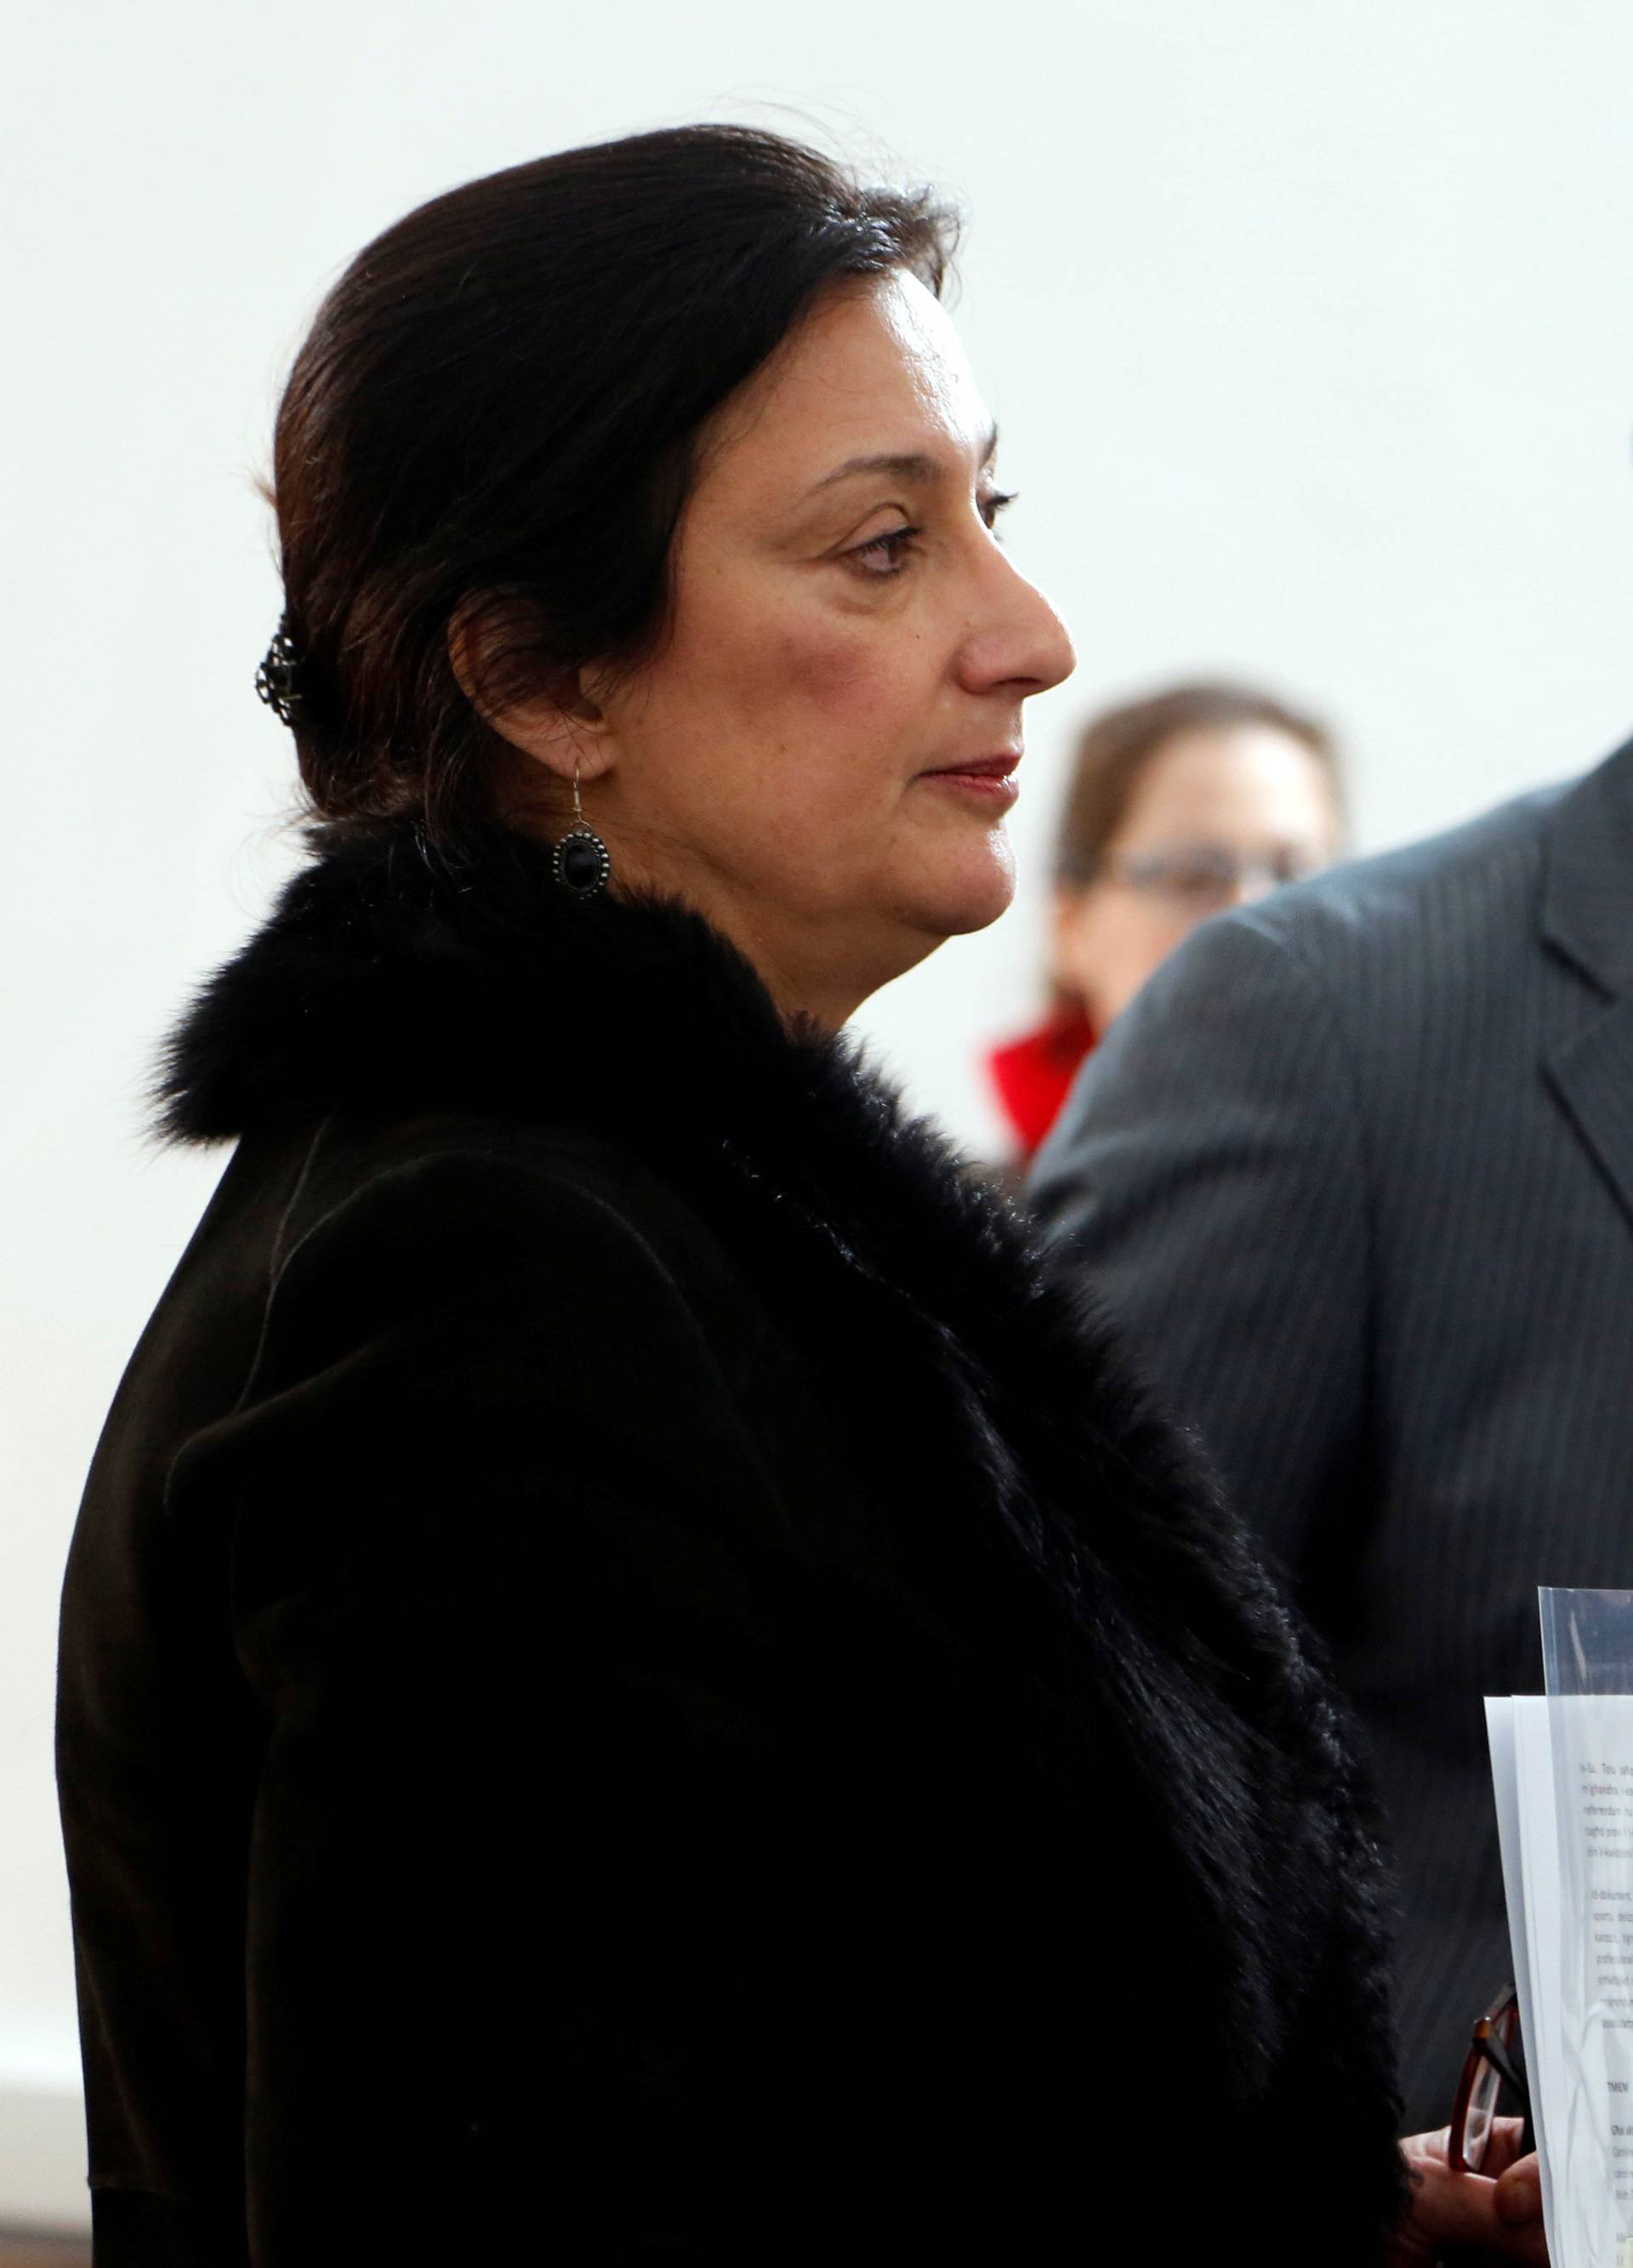 Maltese investigative journalist Daphne Caruana Galizia attends a press conference in Valletta